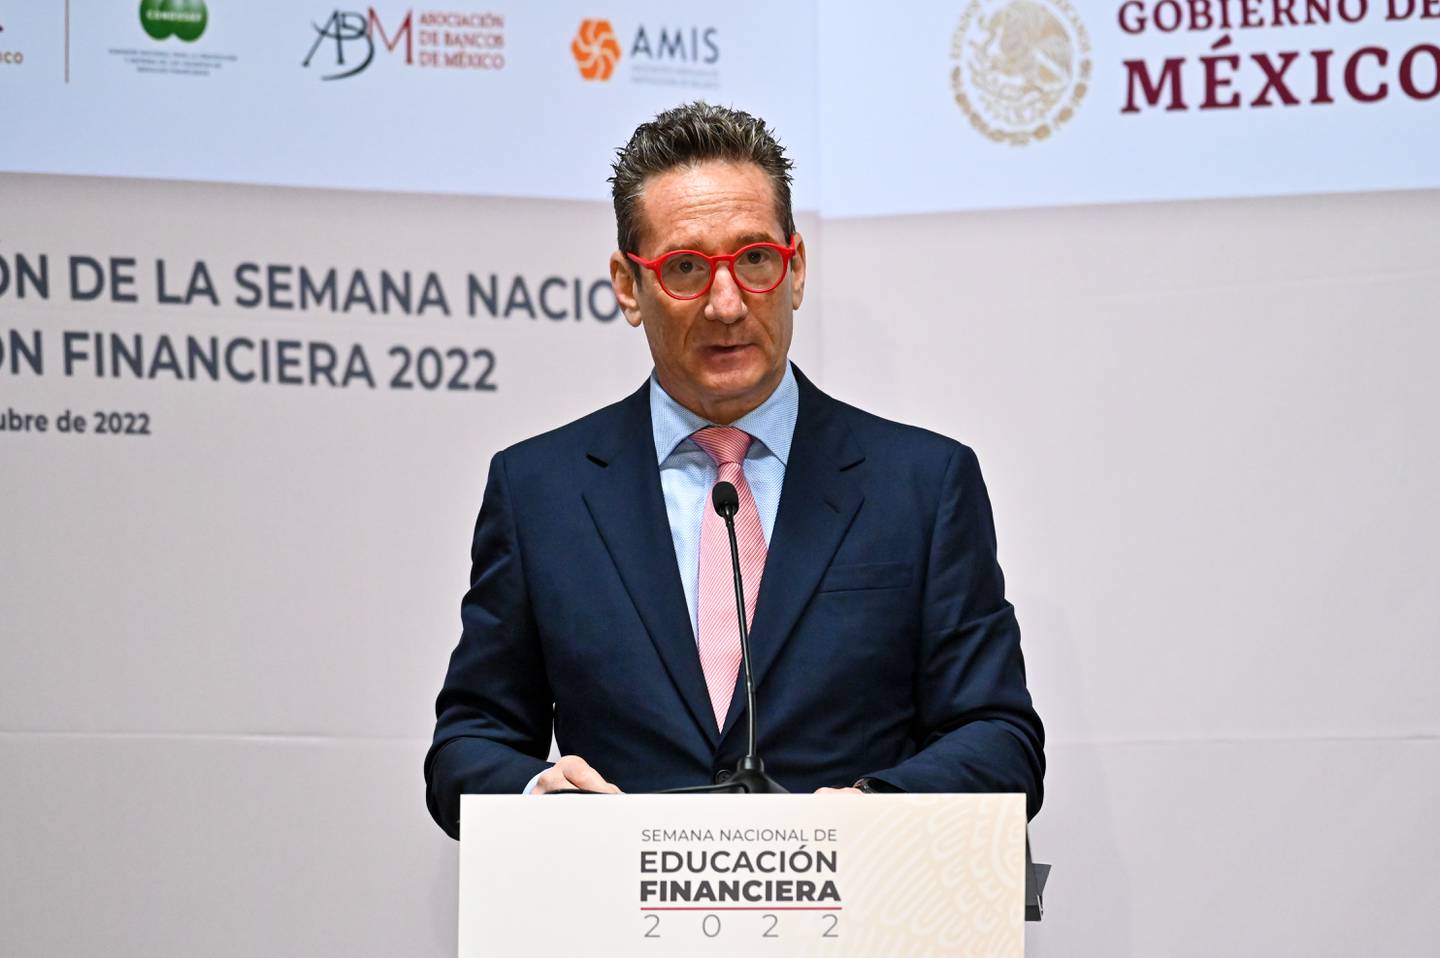 Daniel Becker, Presidente de la ABM durante conferencia de inauguración de la Semana de Educación Financiera 2022